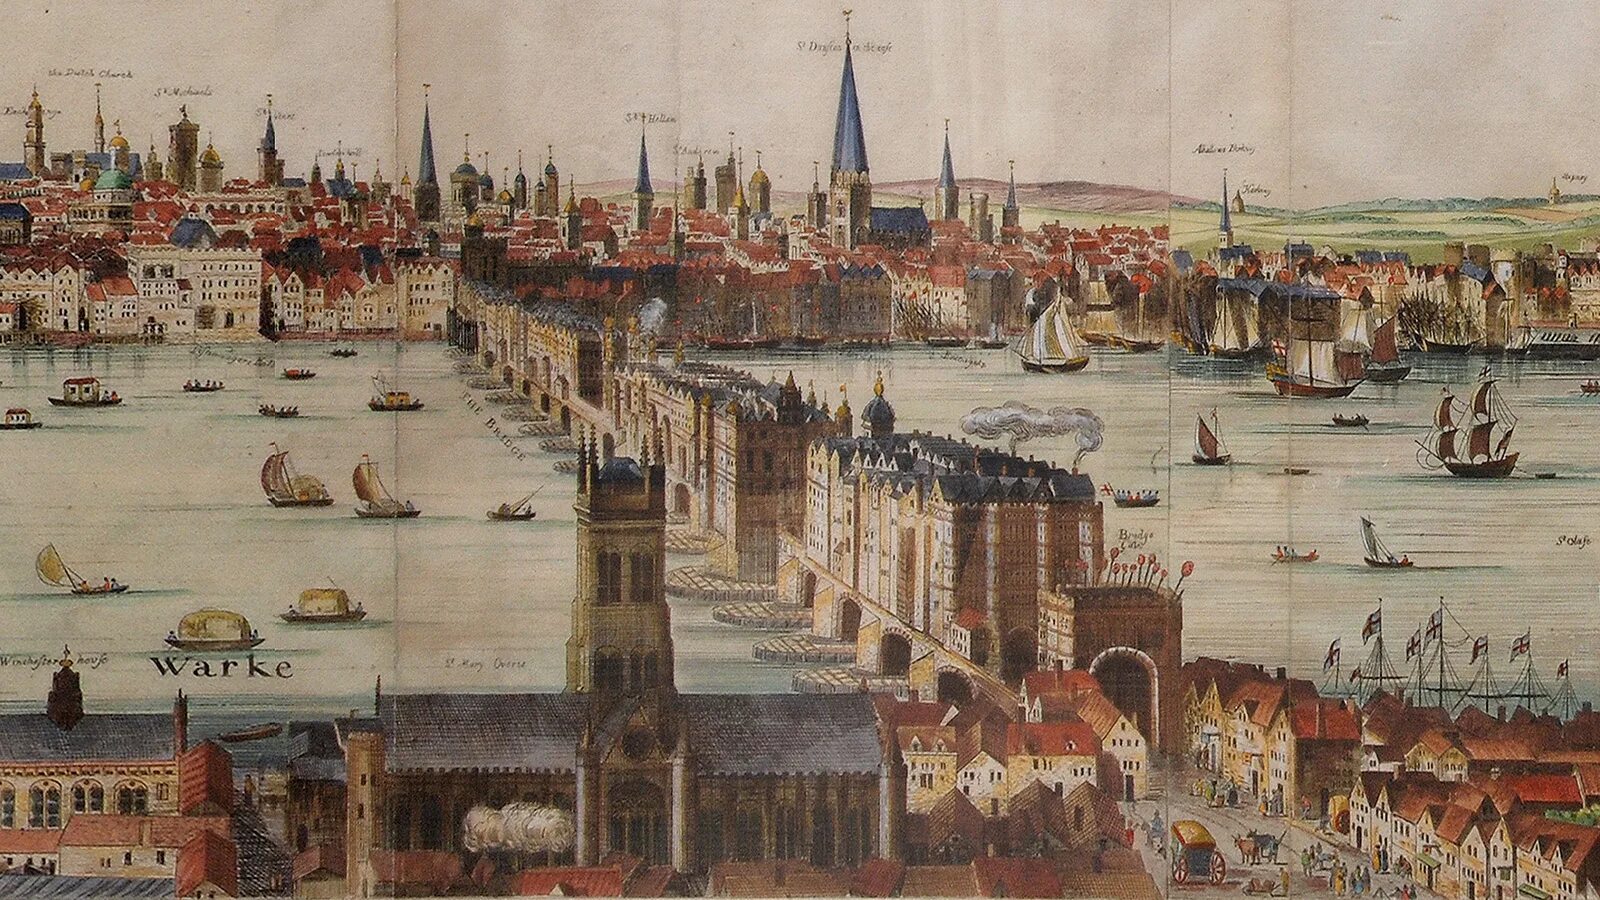 Велик век 16. Лондон 17 века река Темза. Англия в 16 веке Лондон. Лондонский мост 16 век. Лондон 16-17 век.